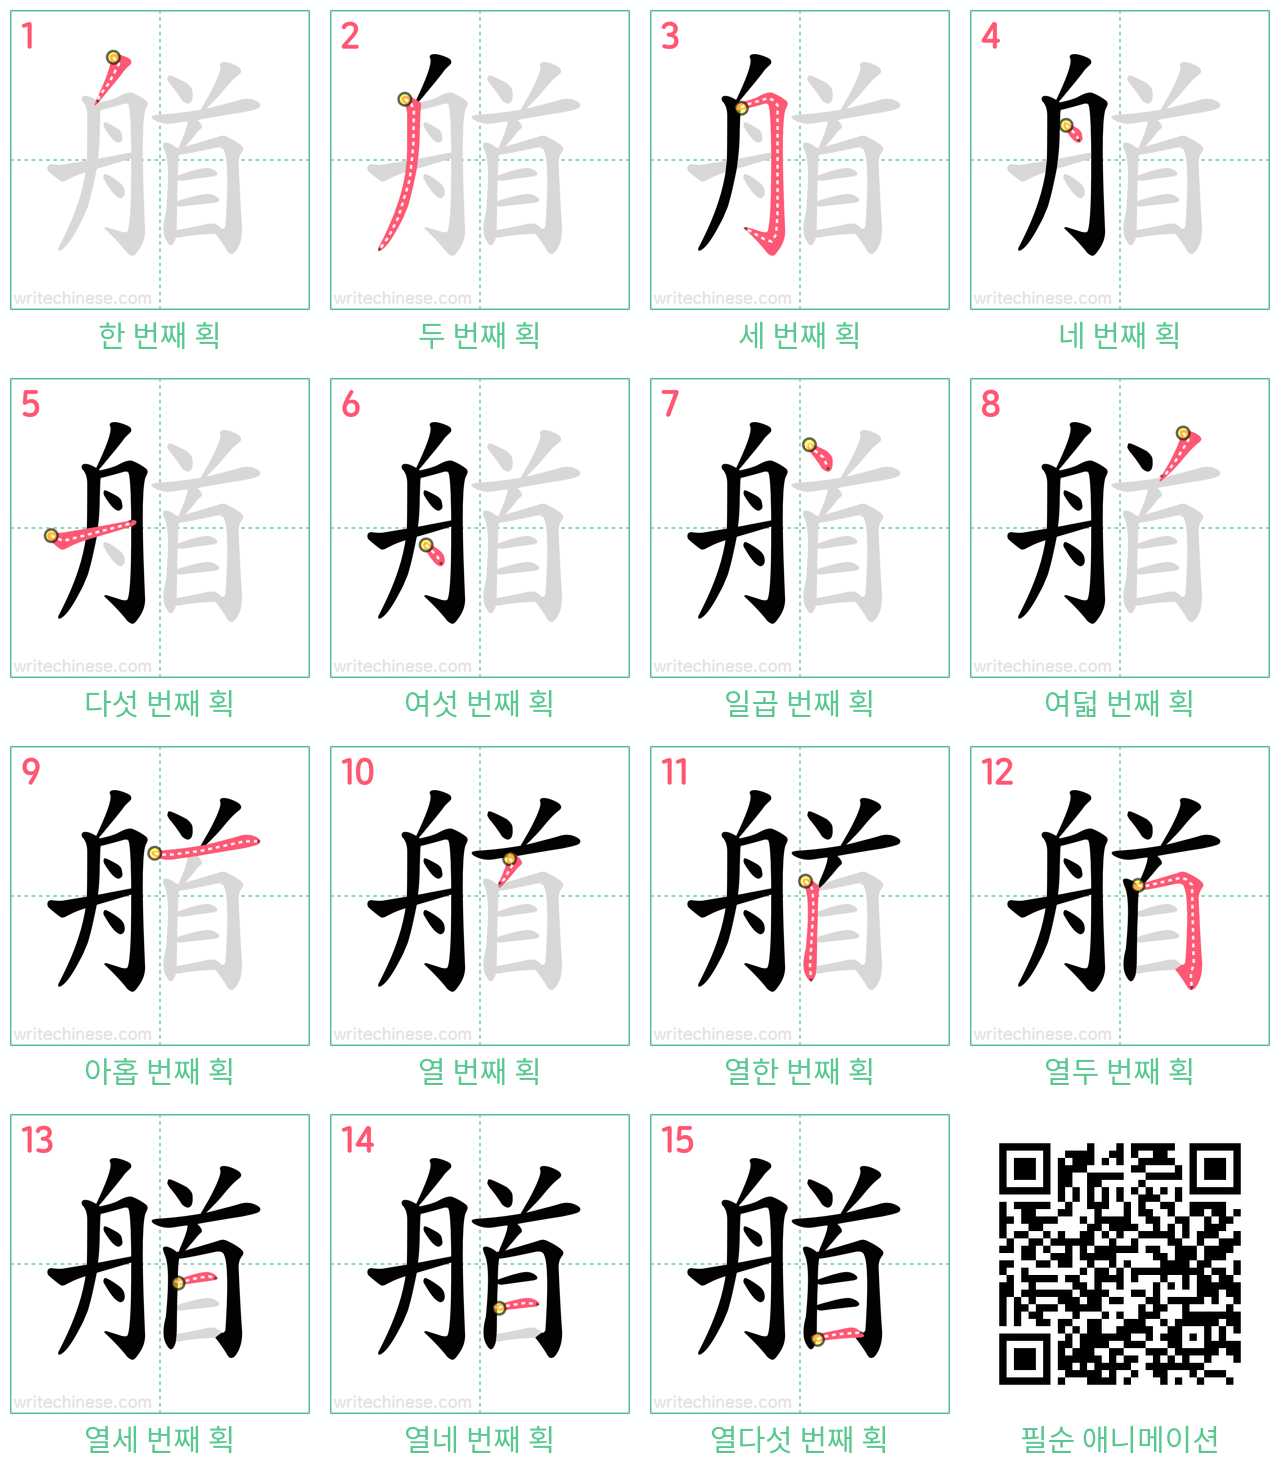 艏 step-by-step stroke order diagrams